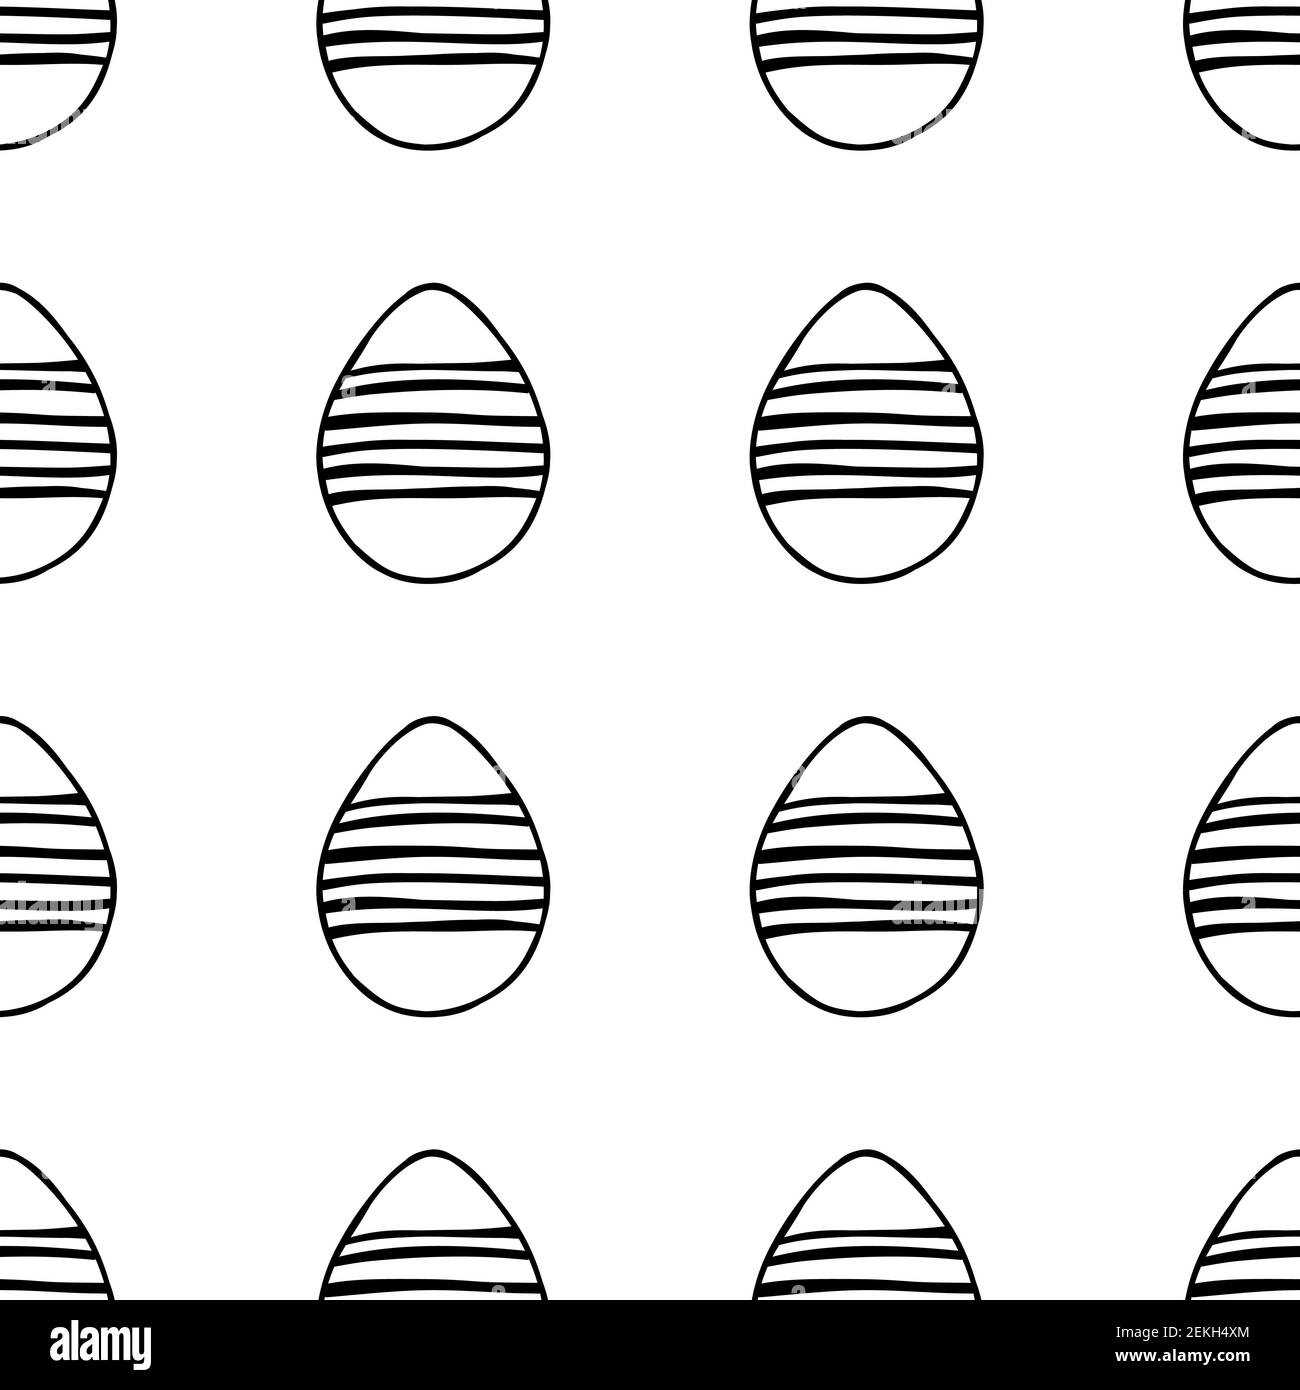 Nahtloses Muster aus handgezeichneten Ostereiern Illustration. Isoliert auf weißem Hintergrund. Stock Vektor